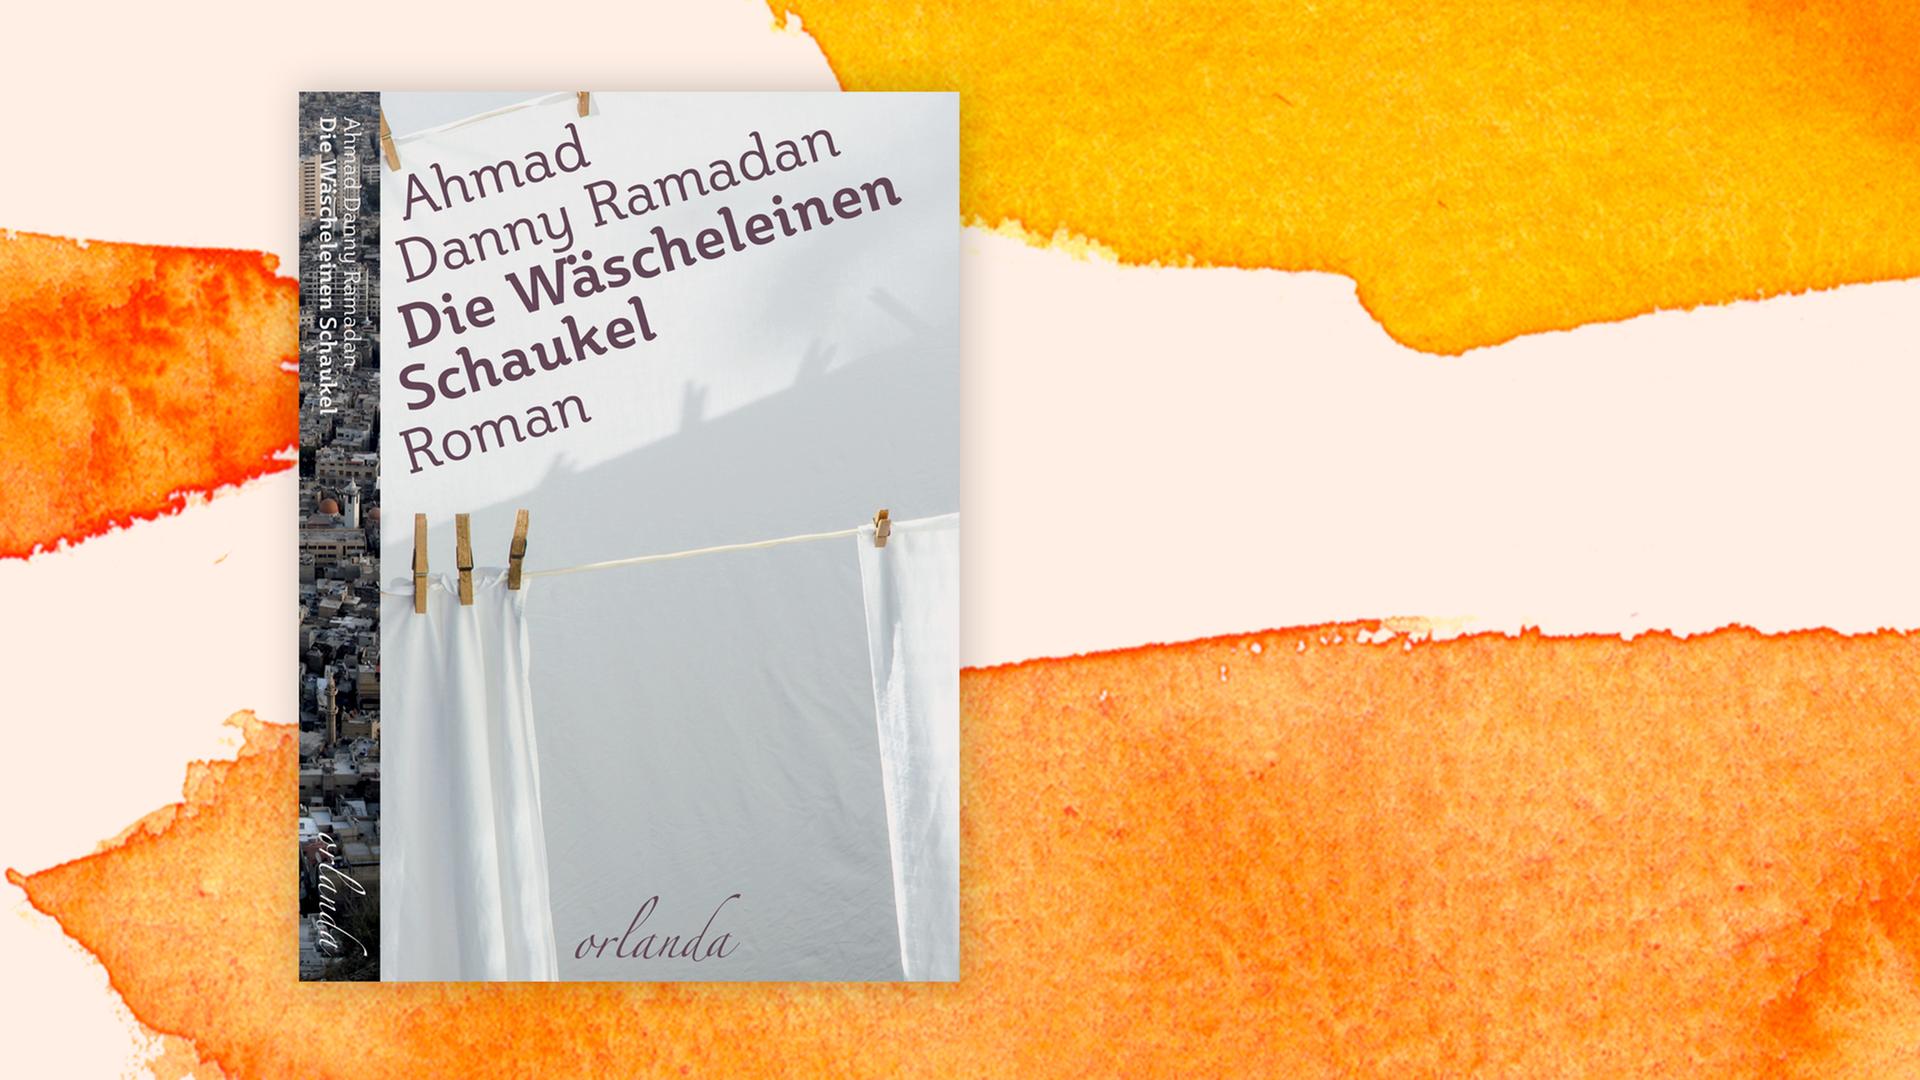 Cover des Buchs "Die Wäscheleinen-Schaukel" von Ahmad Danny Ramadan vor einem teils orangefarbenen Aquarellhintergrund